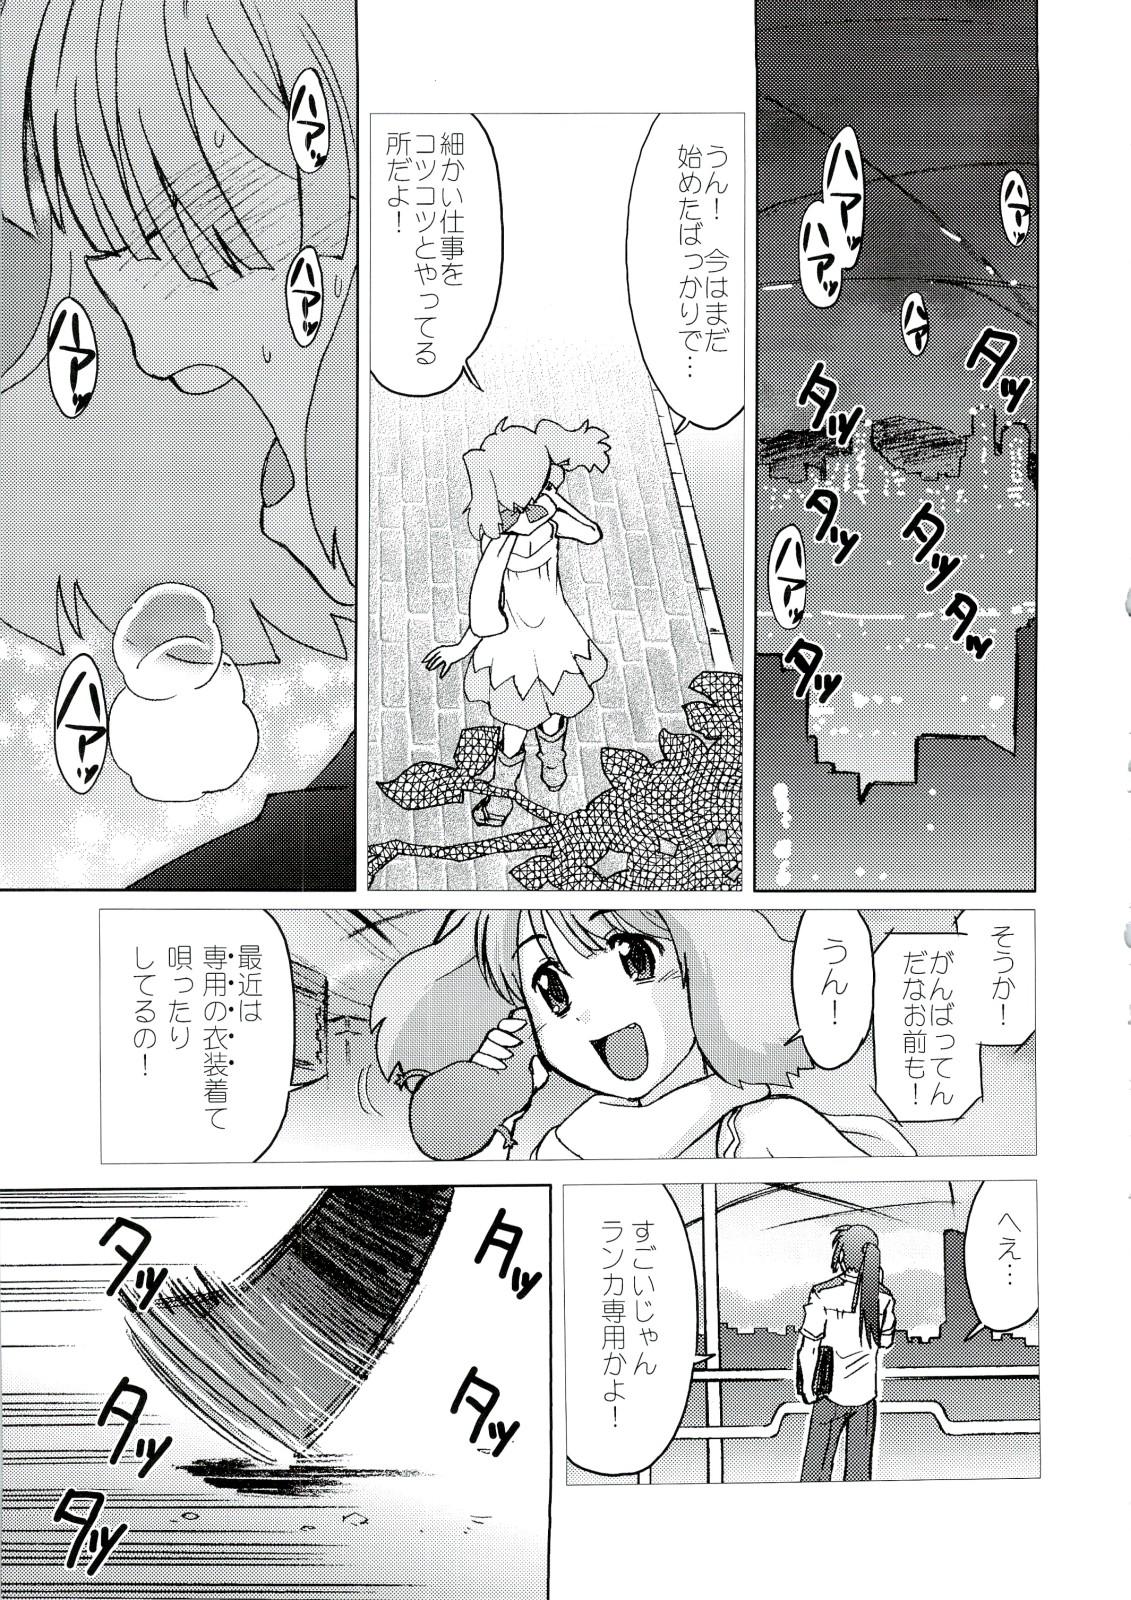 Bubblebutt Kishou Tenketsu 6 - Macross frontier Licking Pussy - Page 4